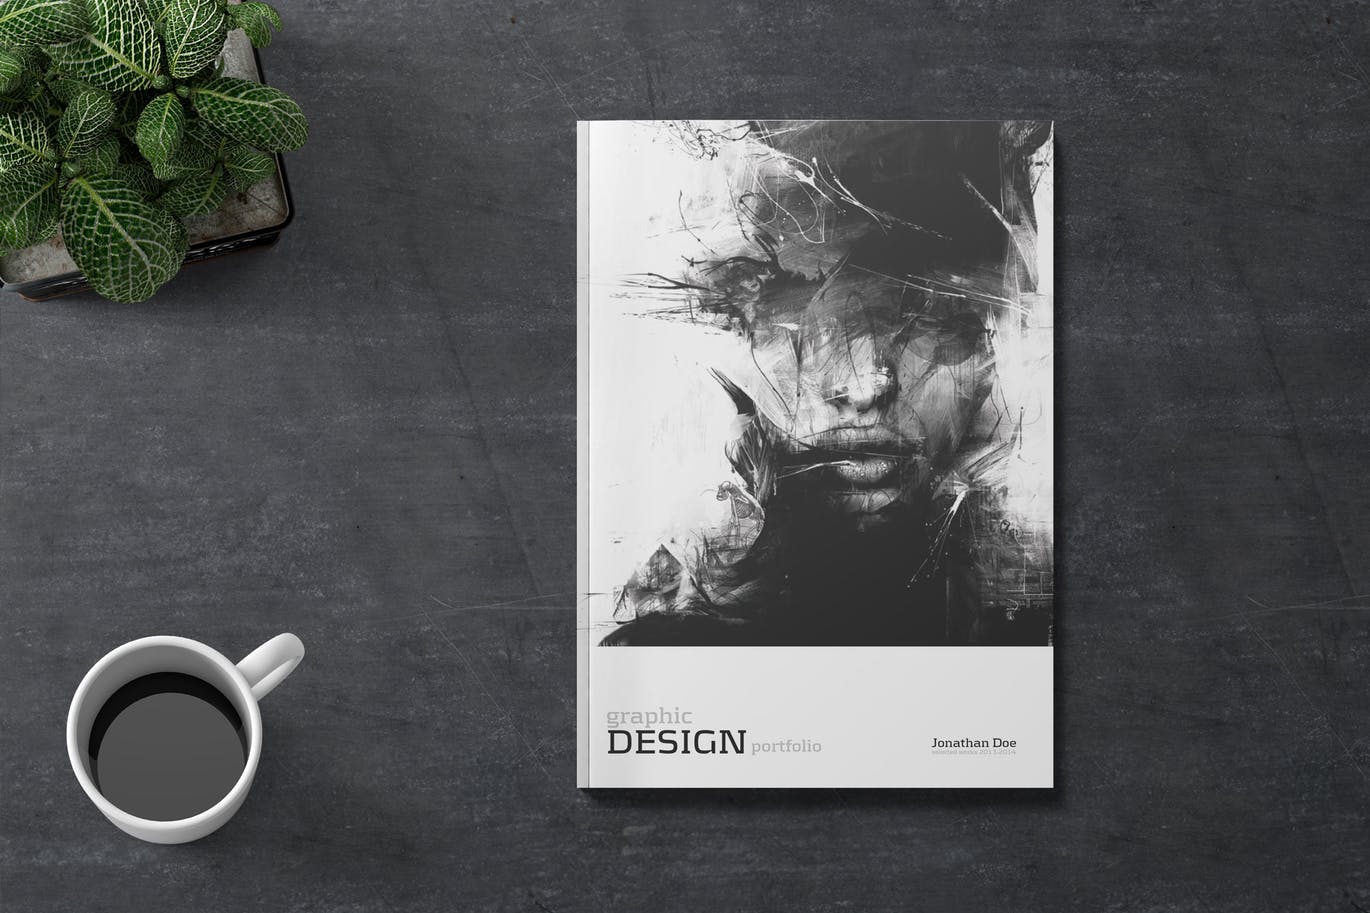 创意设计工作室设计案例/作品集画册设计模板 Creative Design Portfolio #01插图